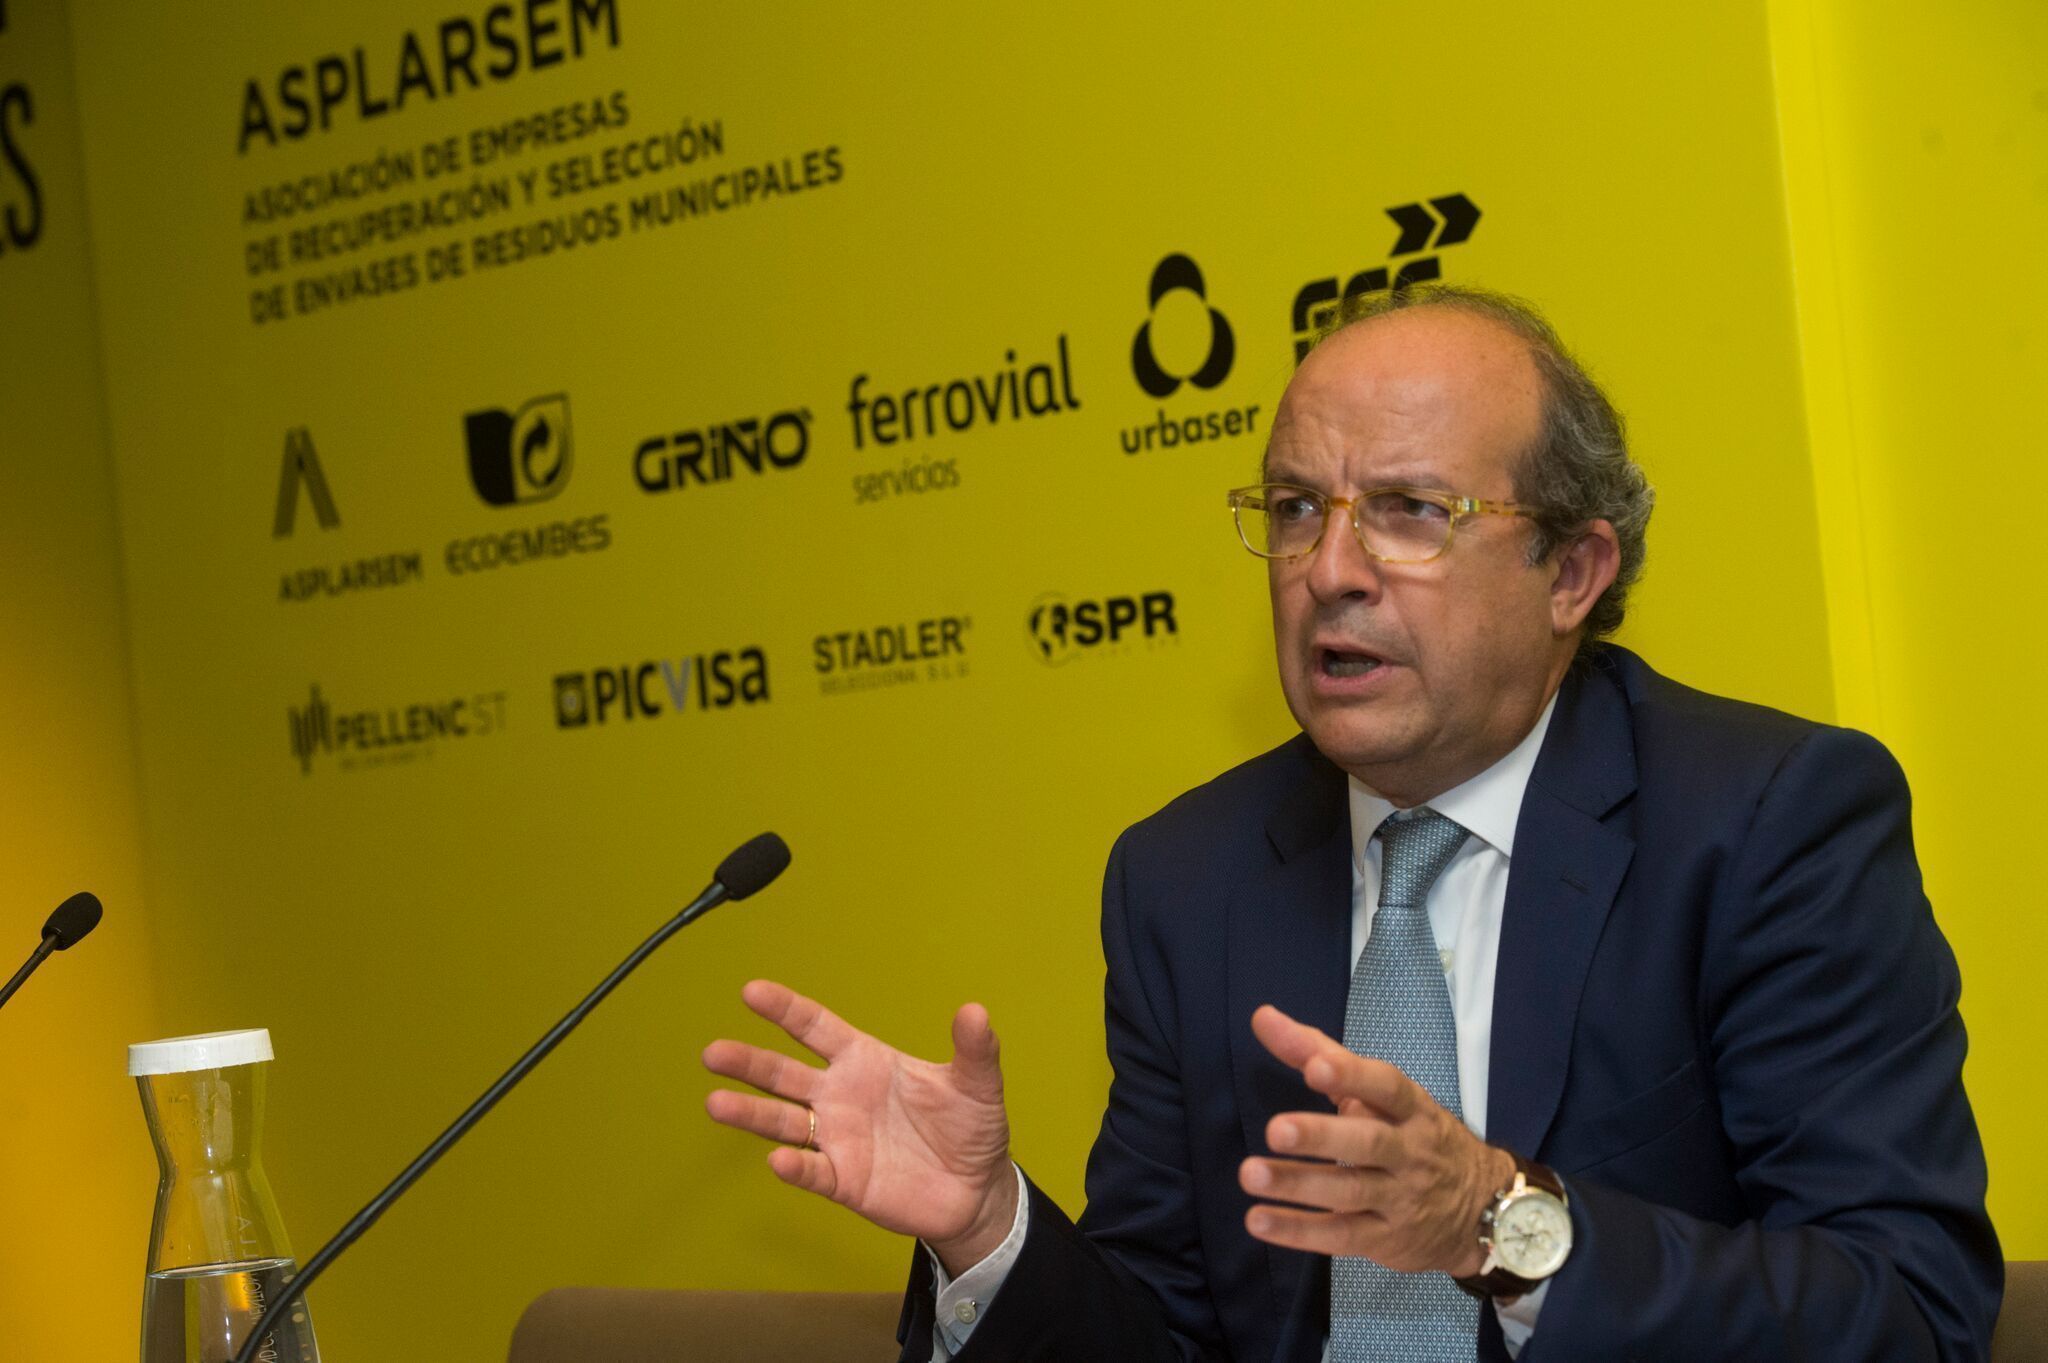 Daniel Calleja Crespo, Director General de Medio Ambiente, Comisin Europea